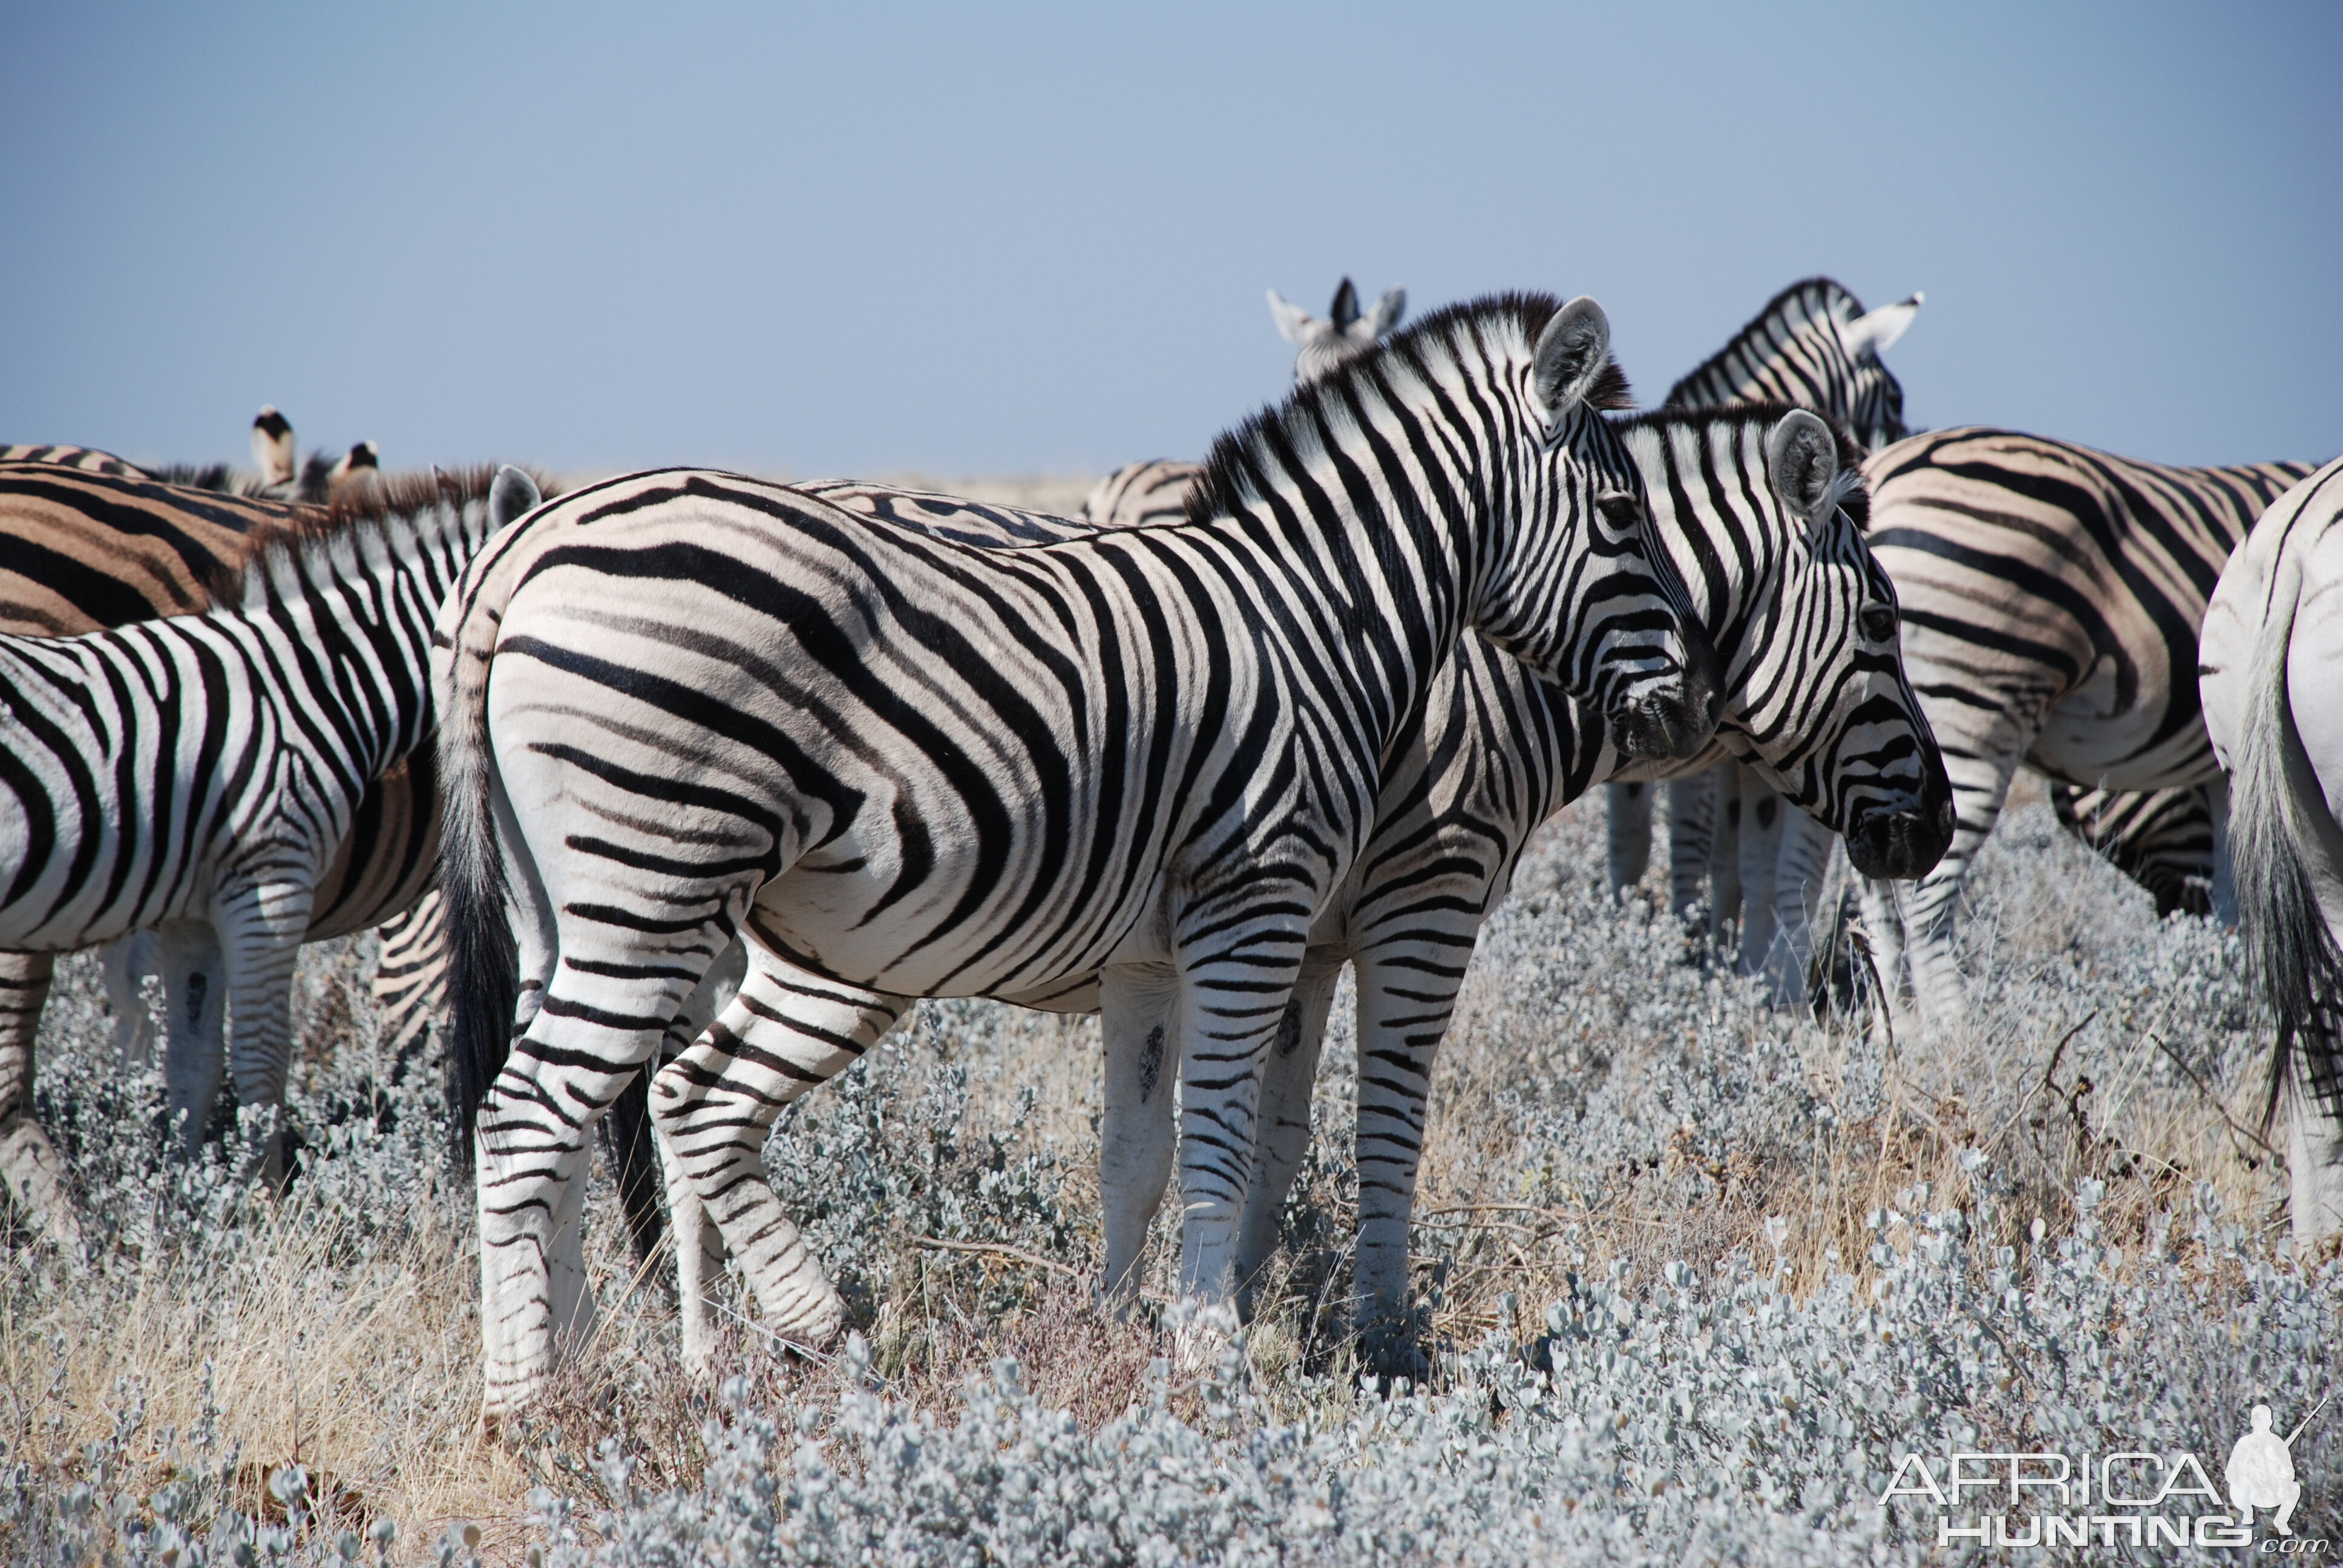 Zebra at Etosha, Namibia